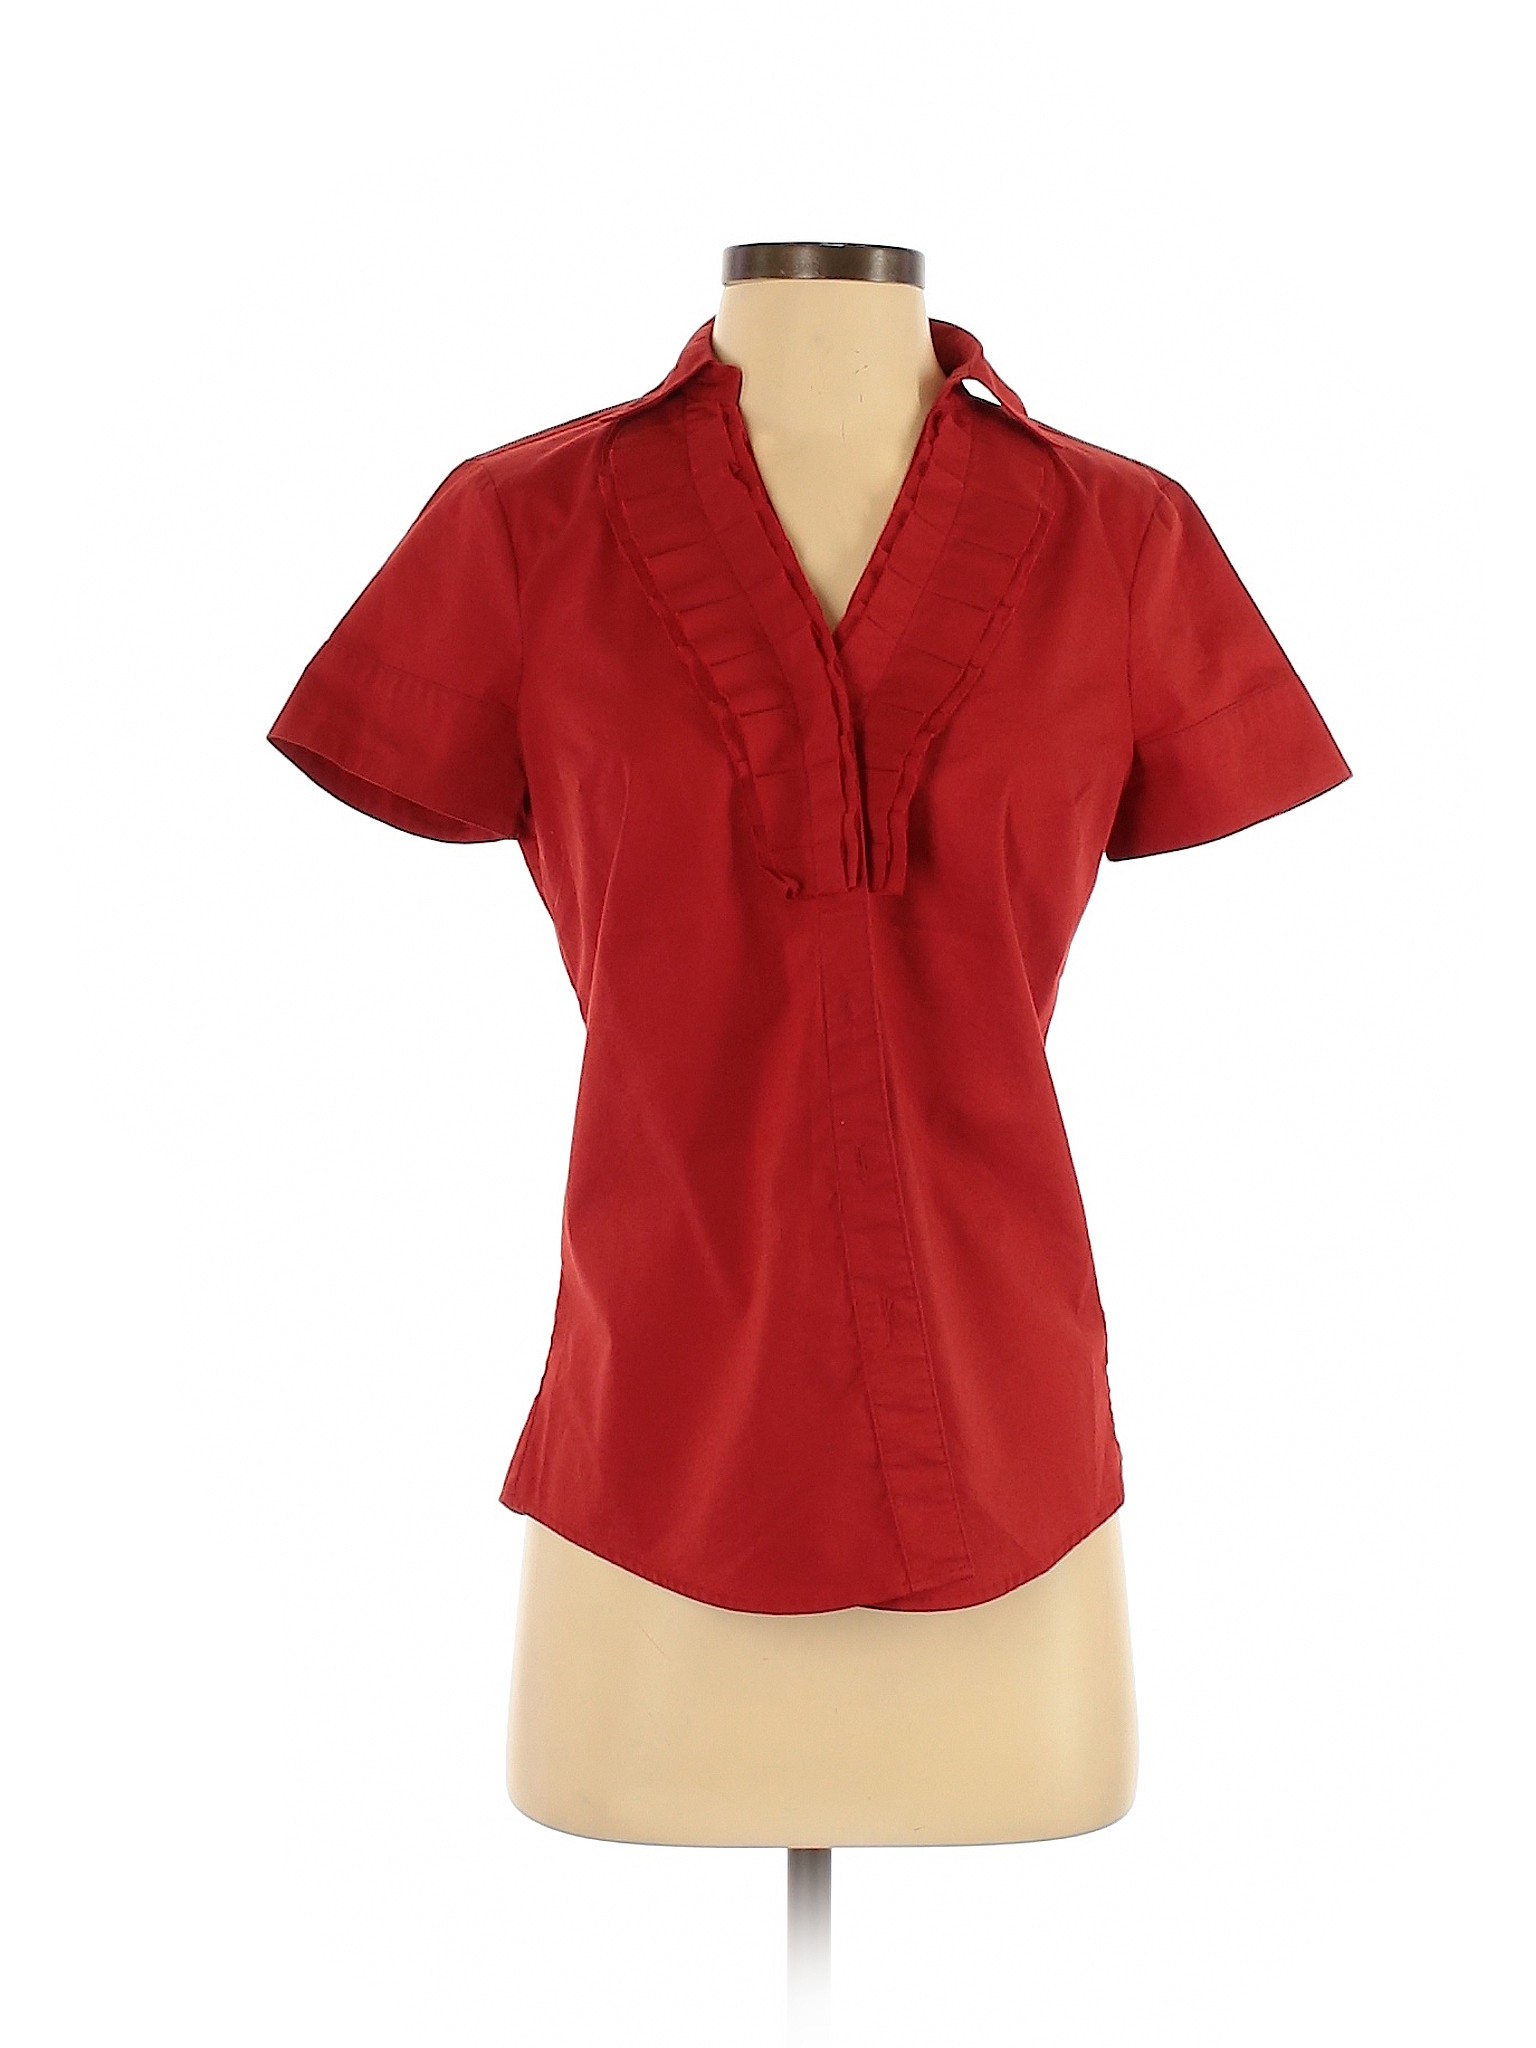 short sleeve red button down shirt women